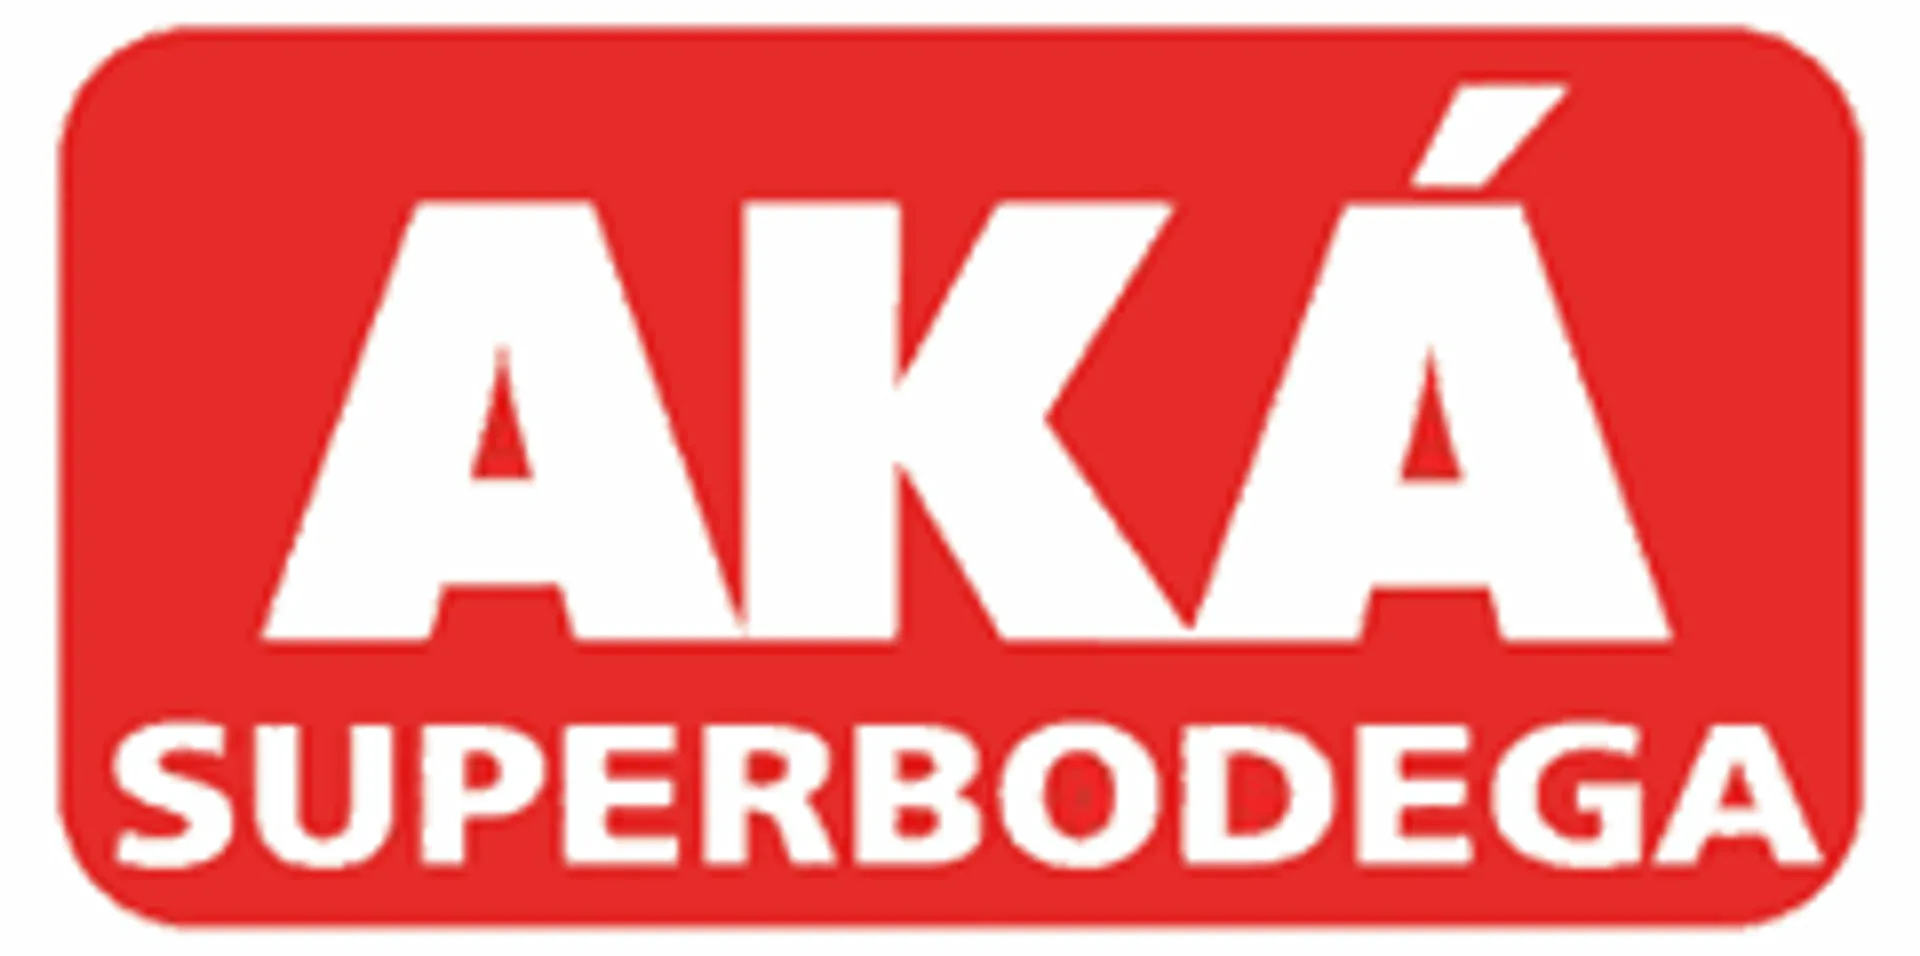 AKÁ SUPERBODEGA logo